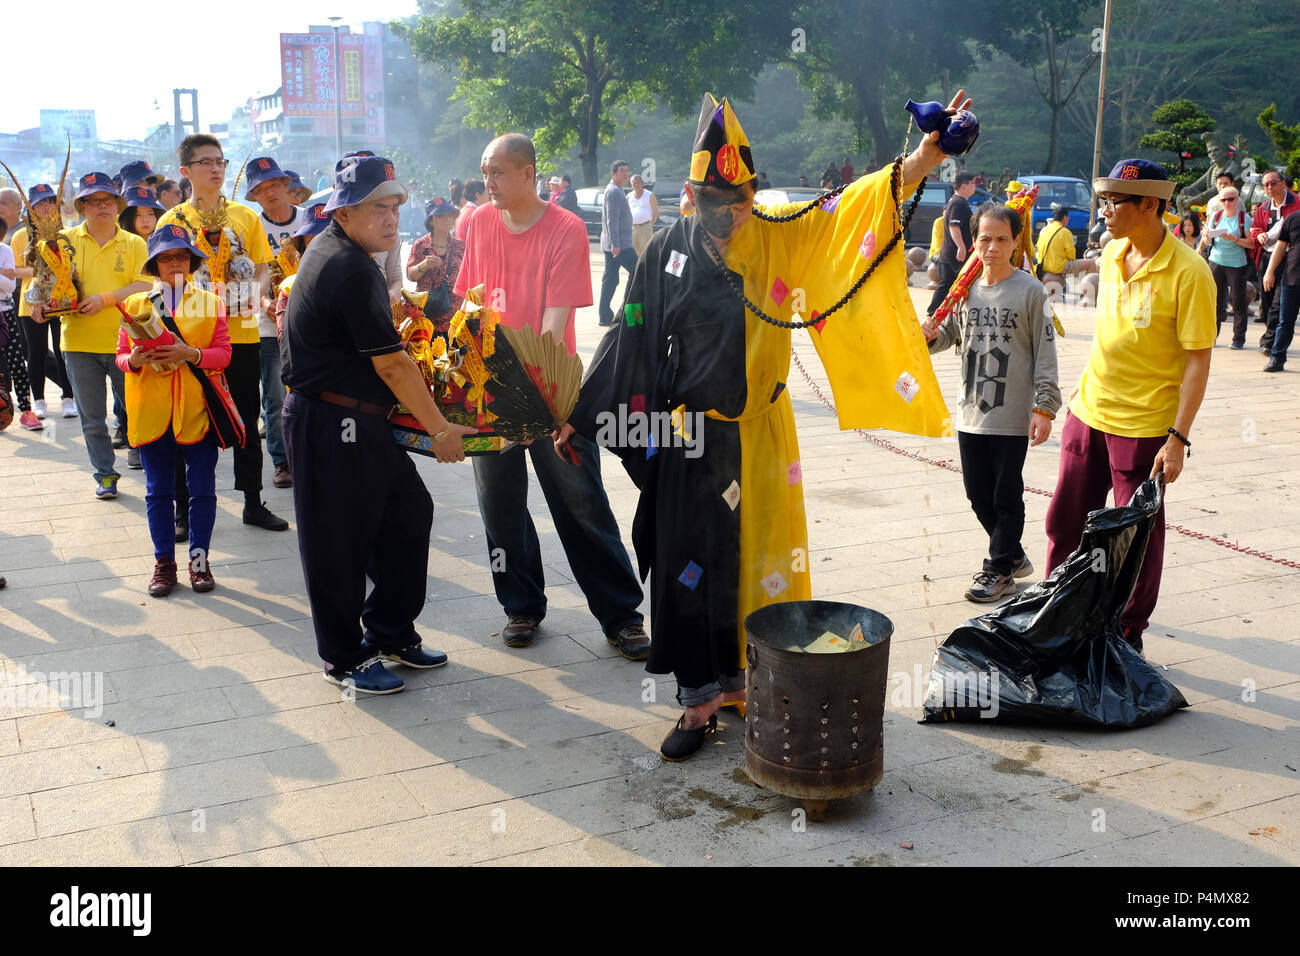 Le moine bouddhiste à l'occasion d'une cérémonie devant le Temple de Longyin Fanlu Canton, Taiwan - Buddhistischer Mönch bei einer Zeremonie vor dem Longyin Tempel dans Fanlu Canton, Taiwan Banque D'Images